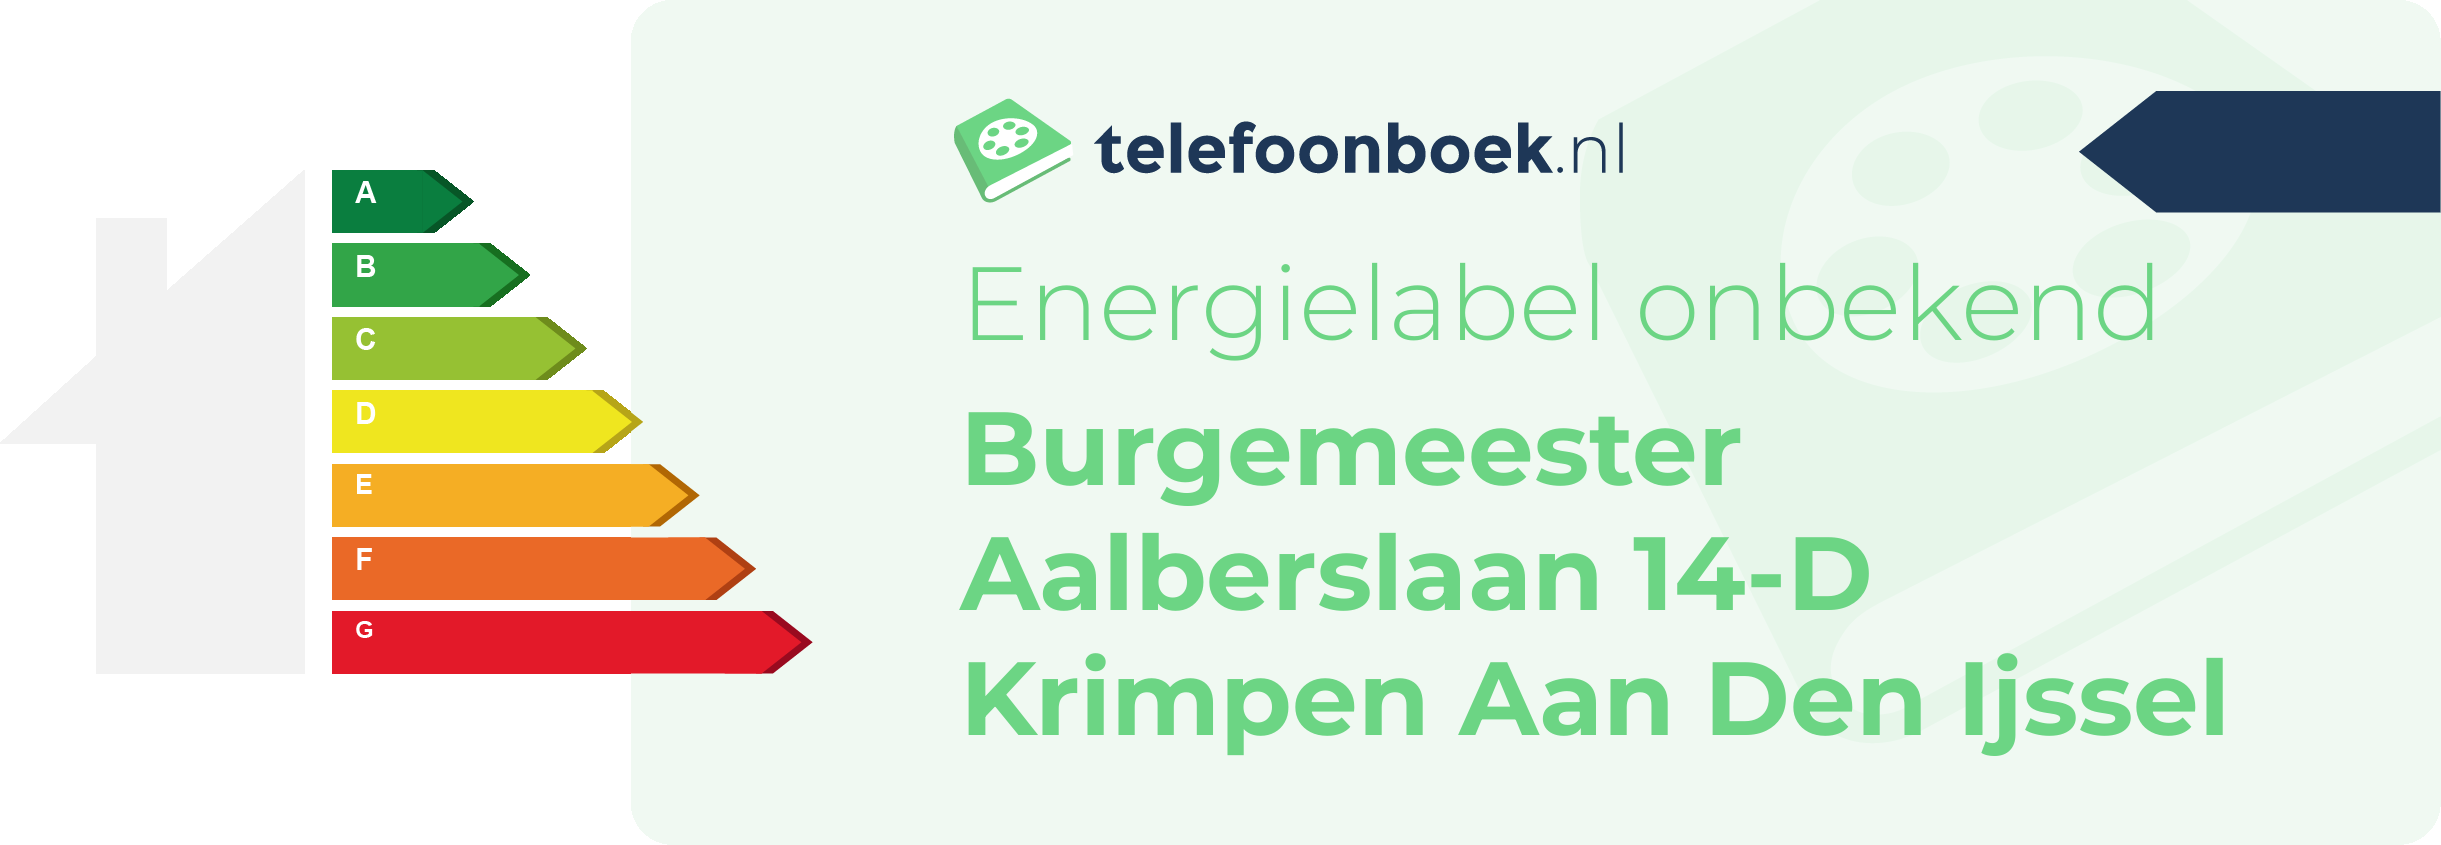 Energielabel Burgemeester Aalberslaan 14-D Krimpen Aan Den Ijssel